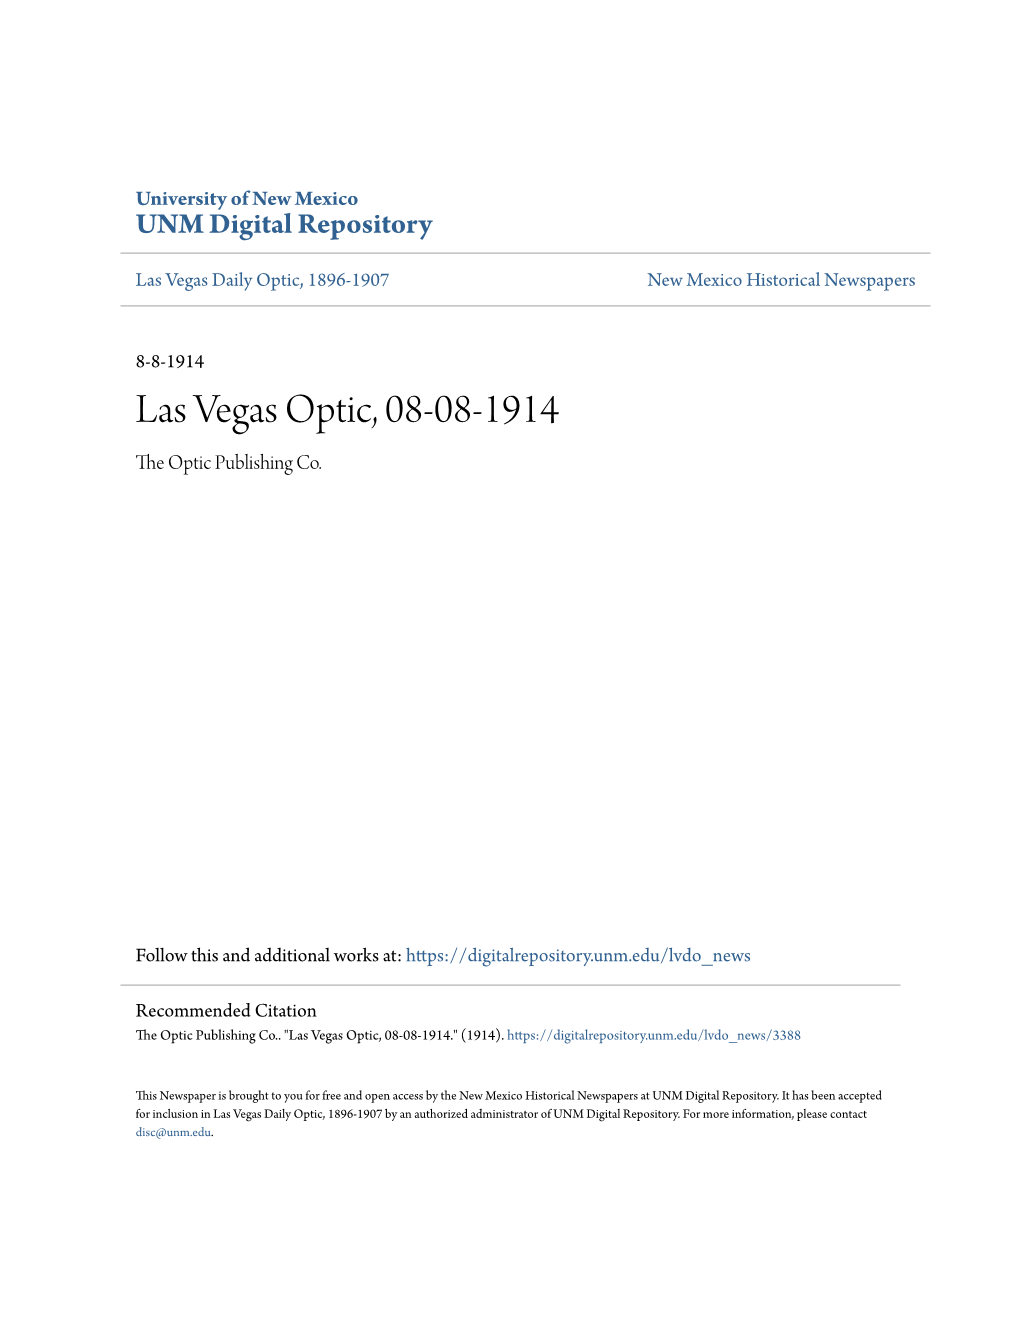 Las Vegas Optic, 08-08-1914 the Optic Publishing Co